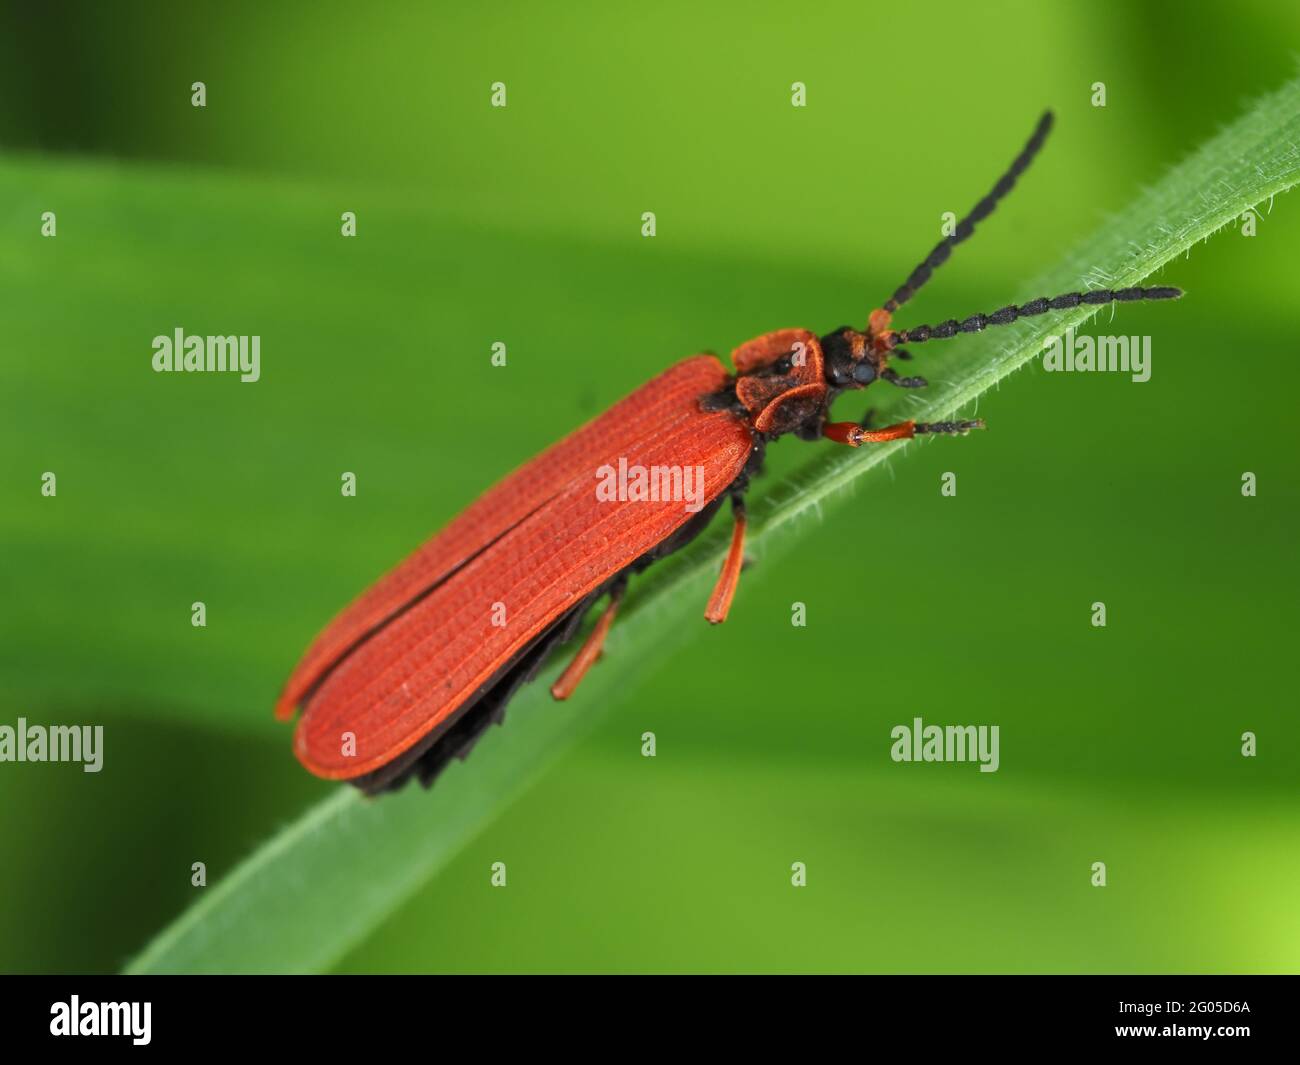 Coleottero rosso alato a rete - Dittyoptera semplicipes Foto Stock